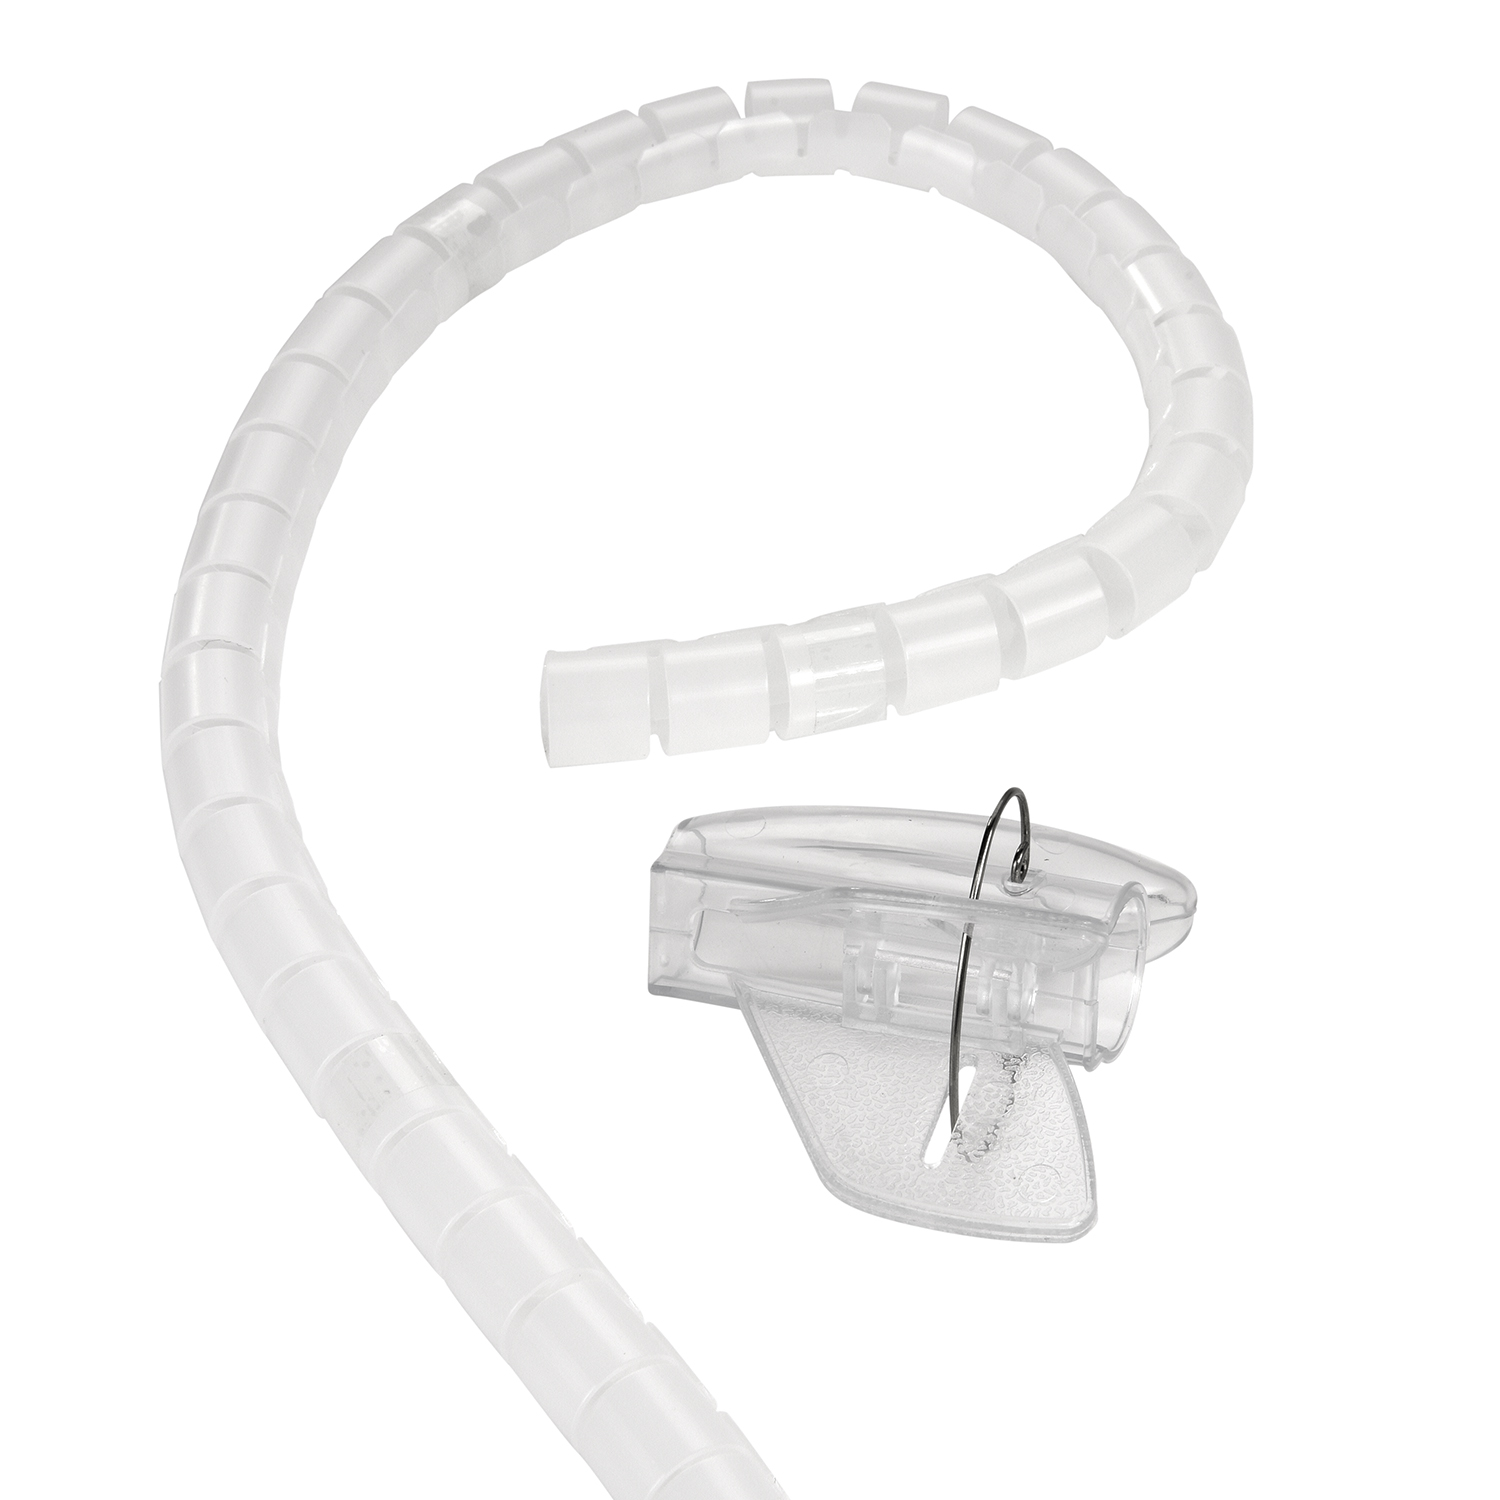 Einfädelhilfe, Premium TPFNET Kabelschlauch, mit 30mm, Transparent Spiral-Kabelschlauch Transparent, 2,5m